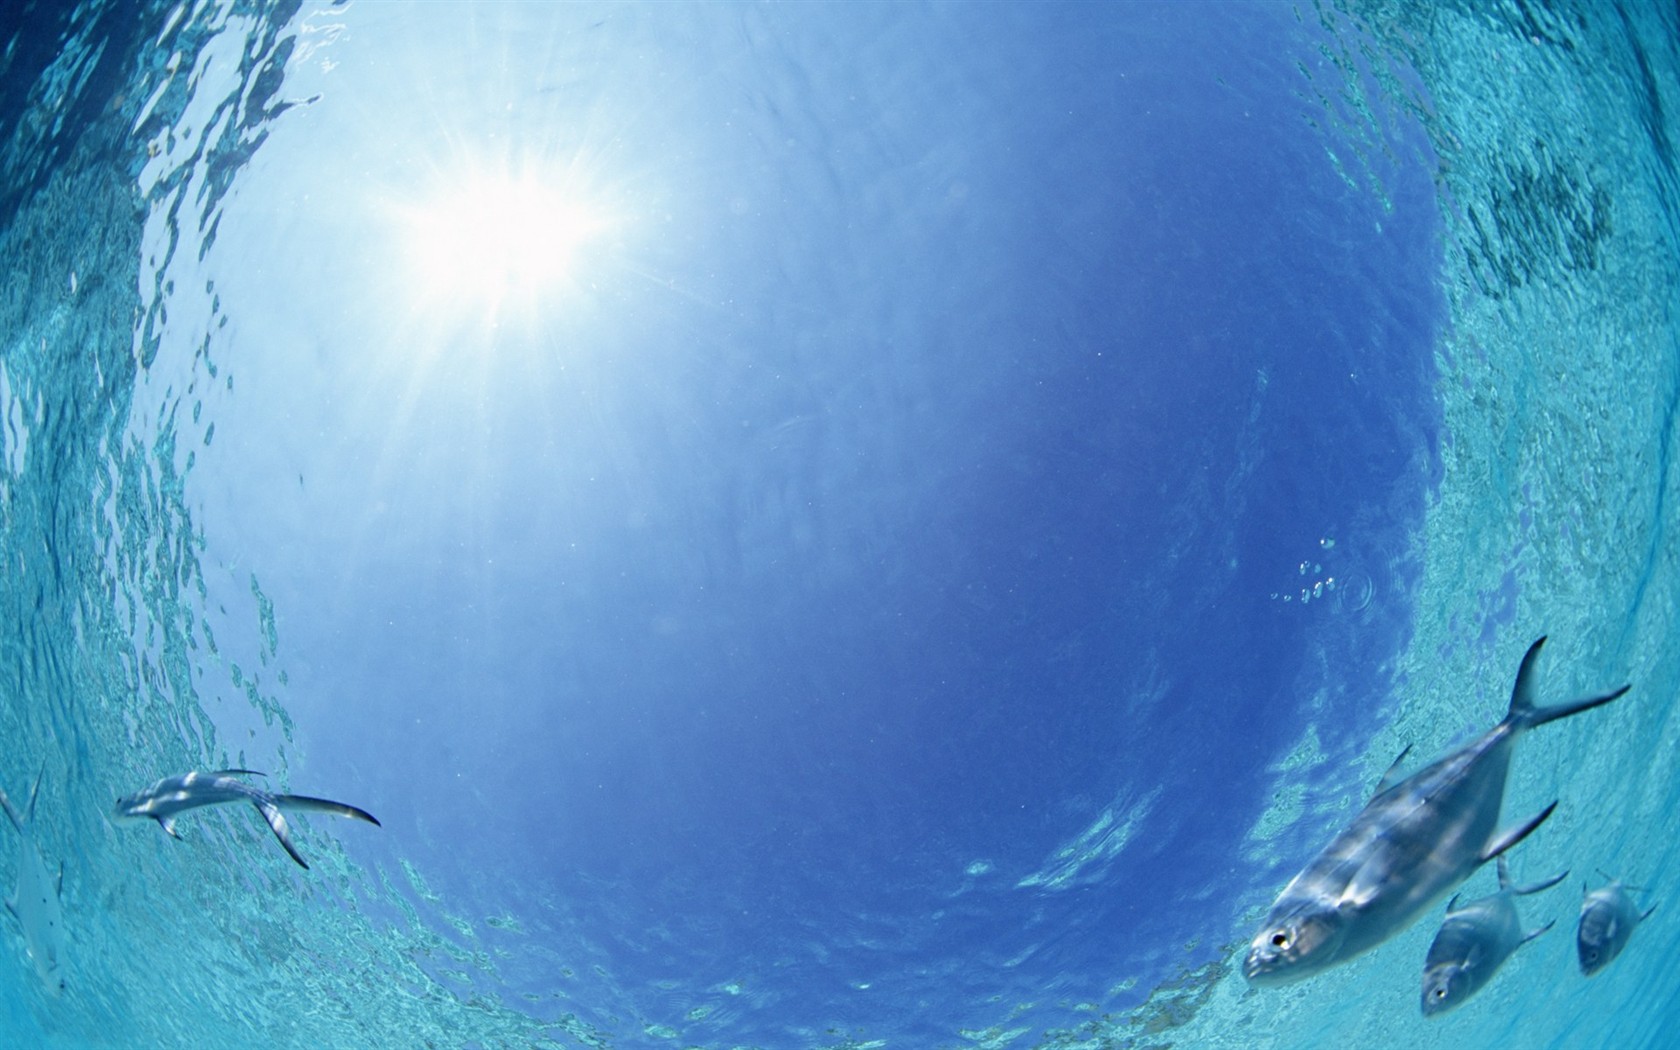 Maledivy vody a modrou oblohu #28 - 1680x1050